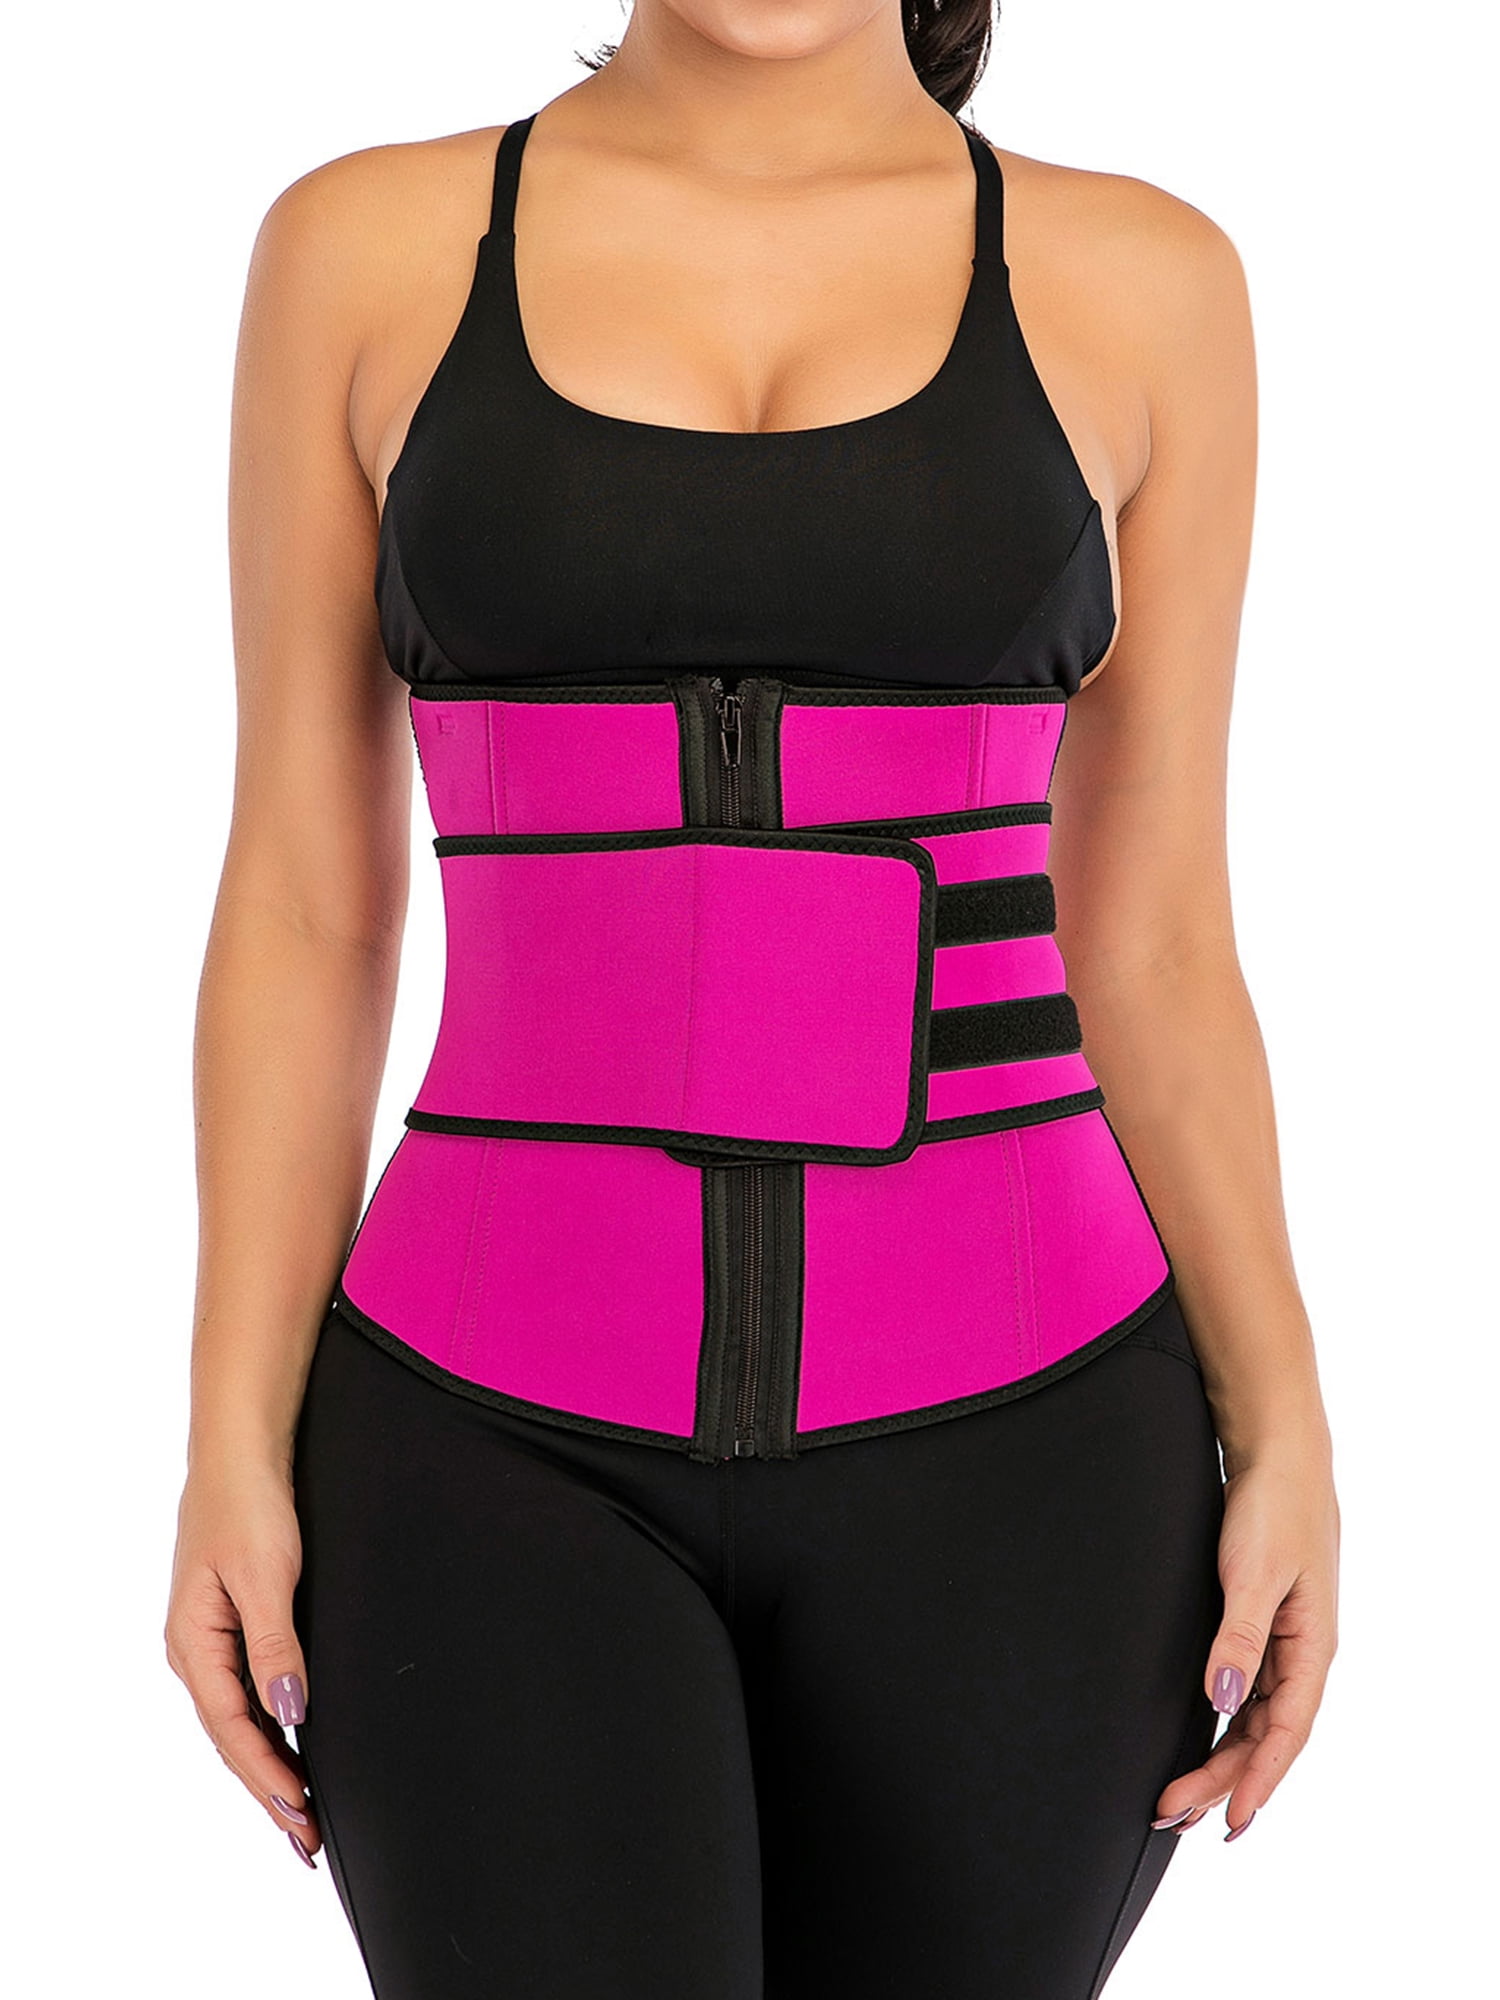 Neoprene Waist Sweat Trainer for Women & Men Weight Loss Pink GROOFOO Waist Trimmer Belt 